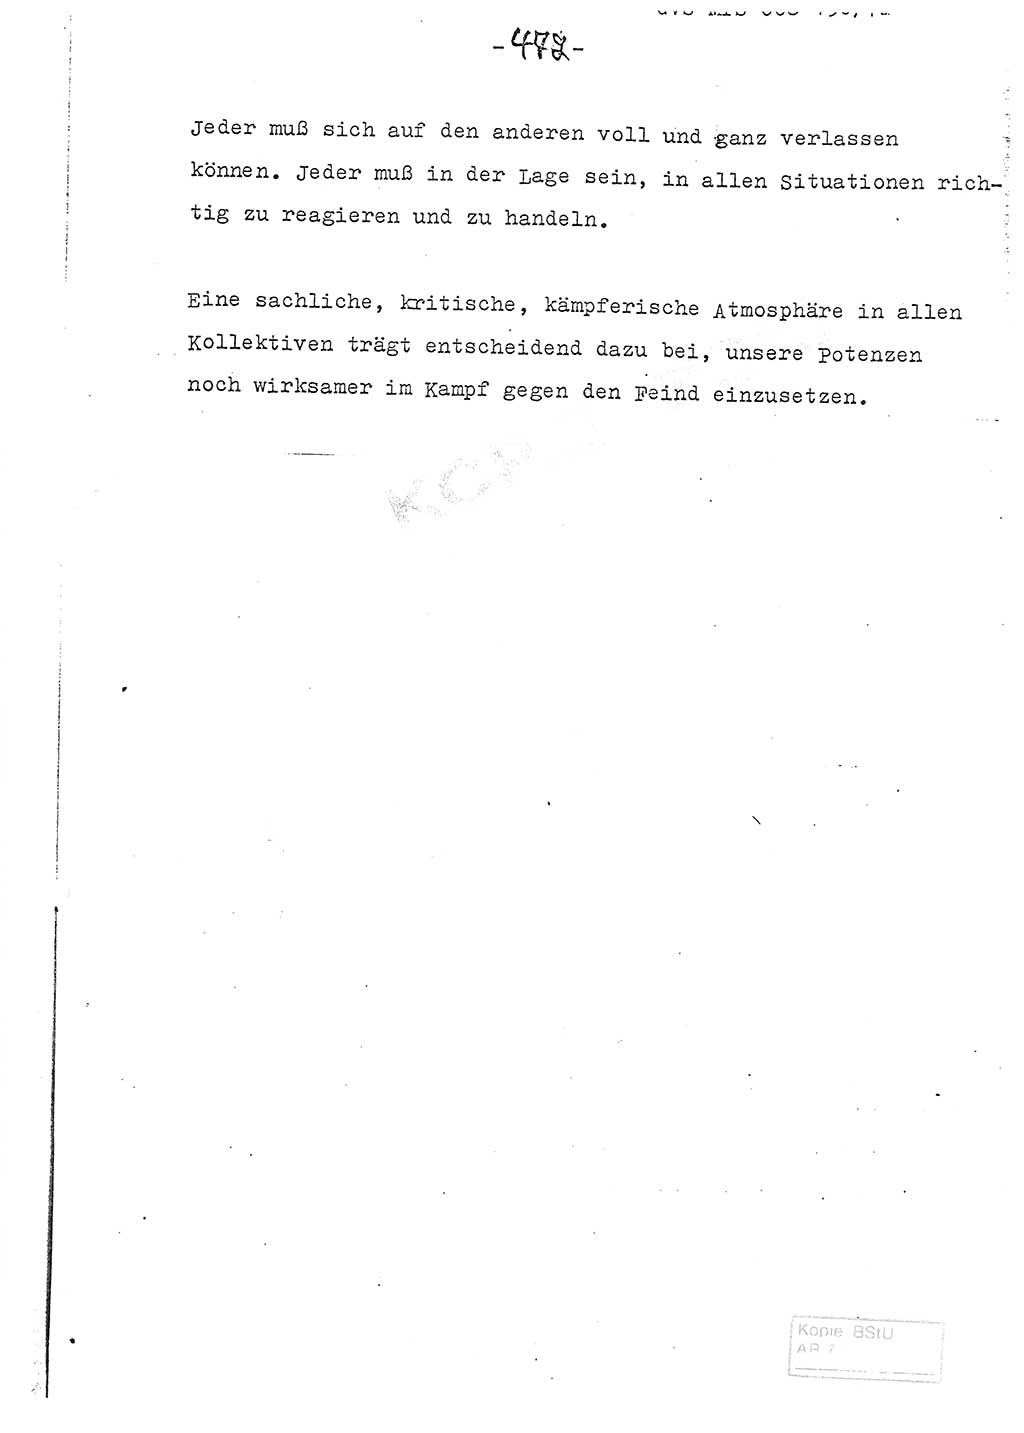 Referat (Entwurf) des Genossen Minister (Generaloberst Erich Mielke) auf der Dienstkonferenz 1972, Ministerium für Staatssicherheit (MfS) [Deutsche Demokratische Republik (DDR)], Der Minister, Geheime Verschlußsache (GVS) 008-150/72, Berlin 25.2.1972, Seite 472 (Ref. Entw. DK MfS DDR Min. GVS 008-150/72 1972, S. 472)